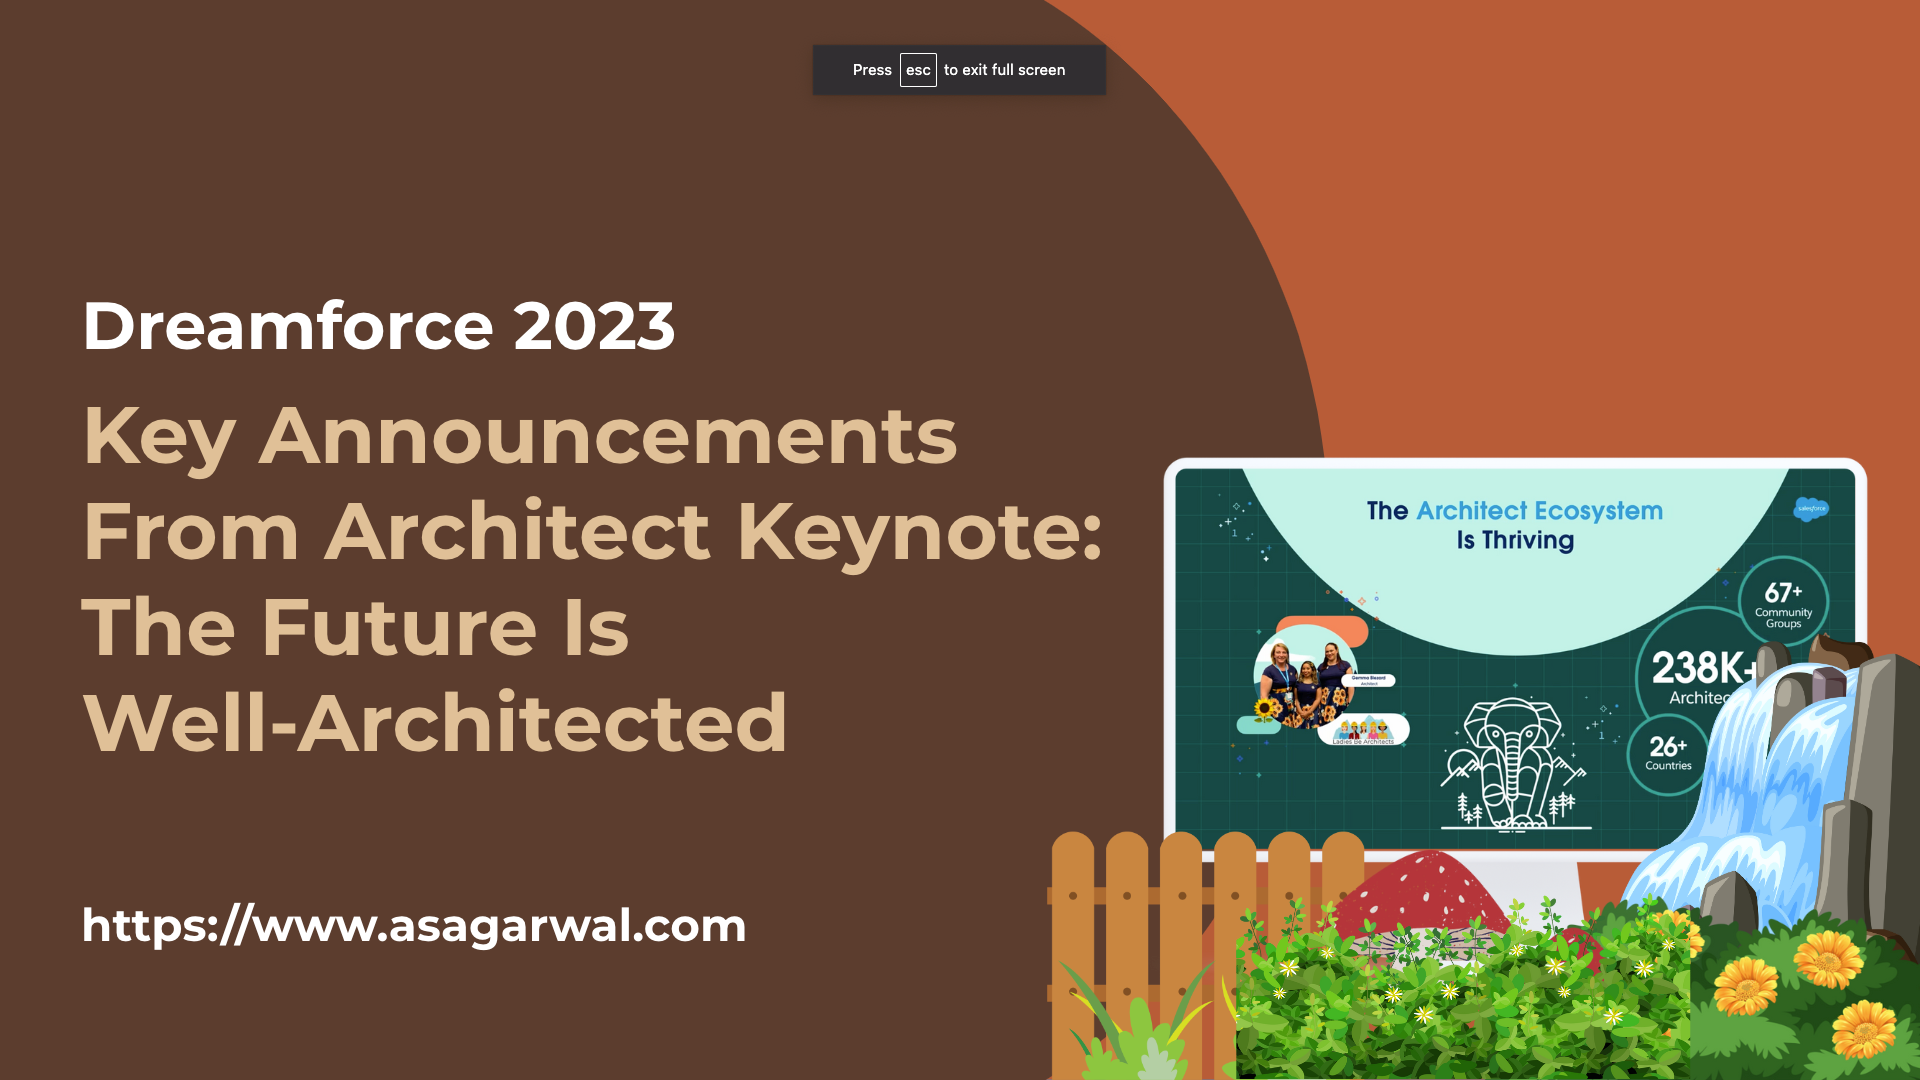 Dreamforce 2023 Architect Keynote